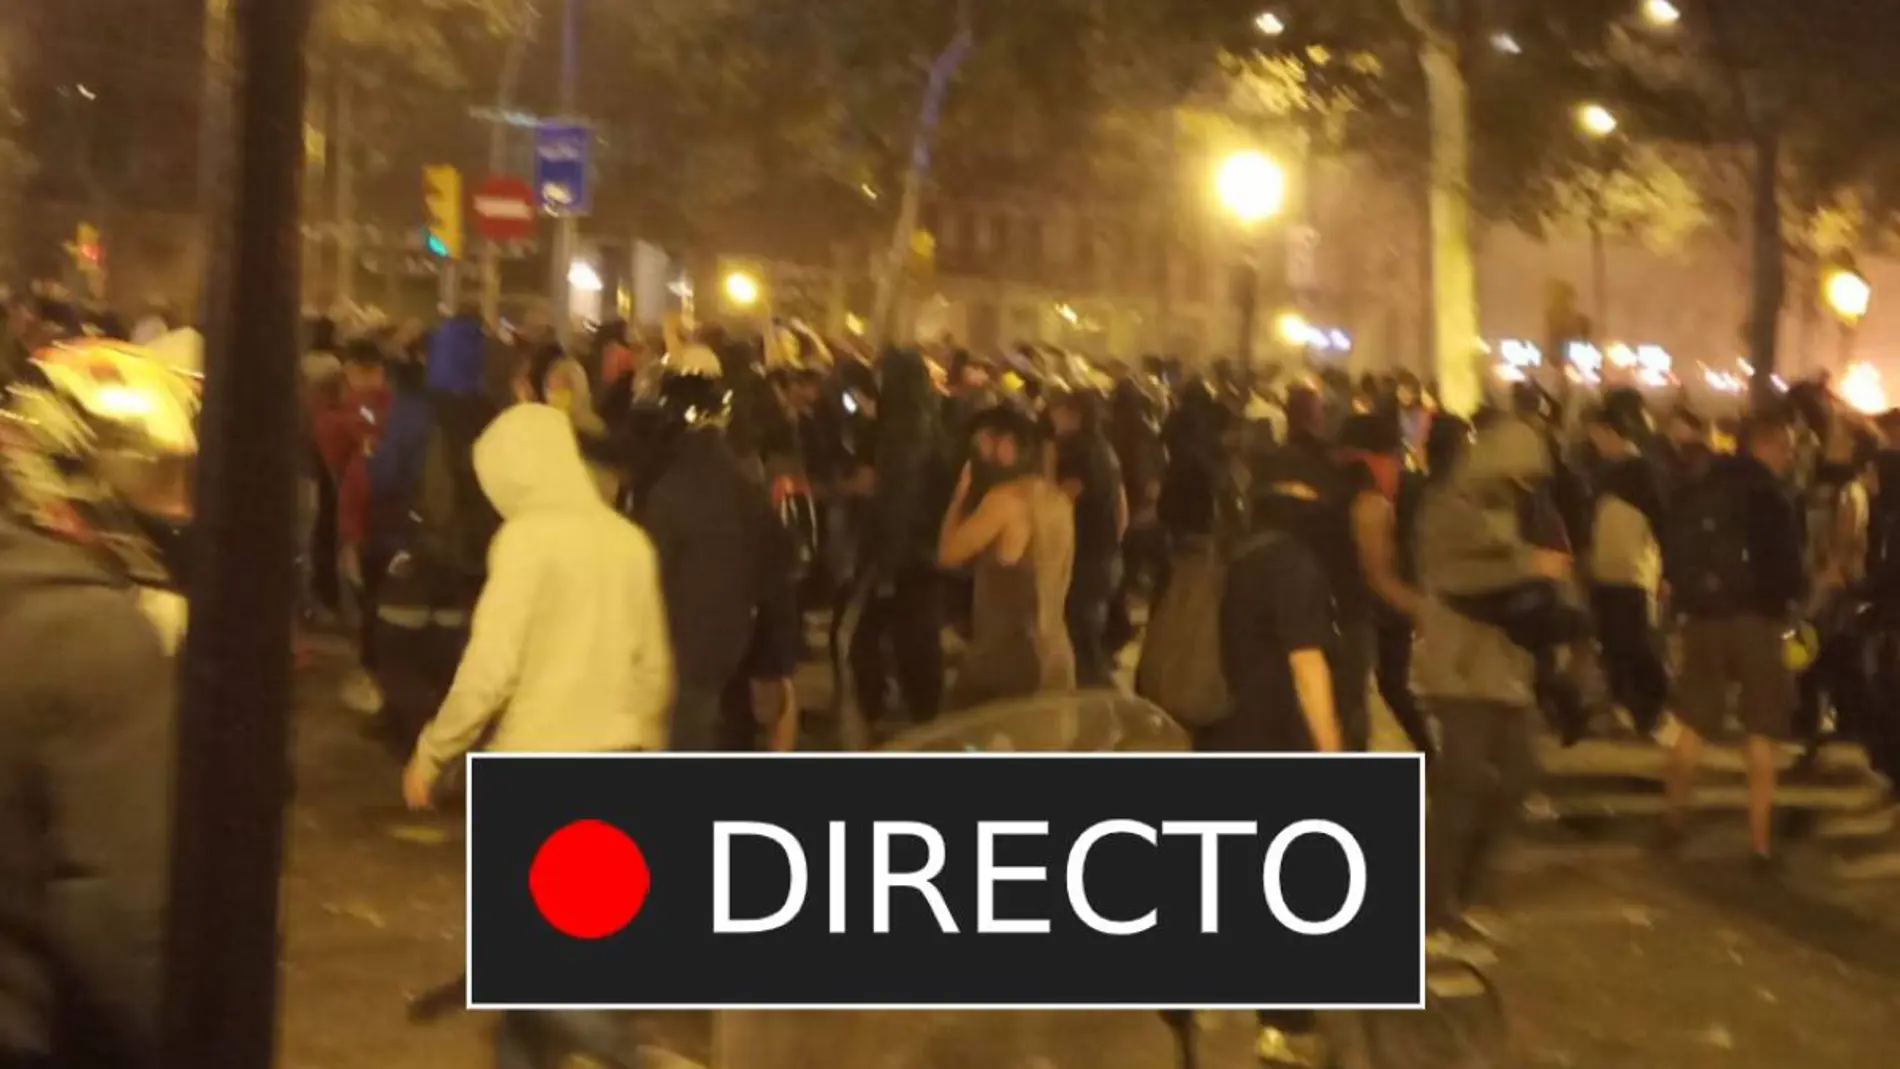 Última hora desde Cataluña Disturbios en Barcelona